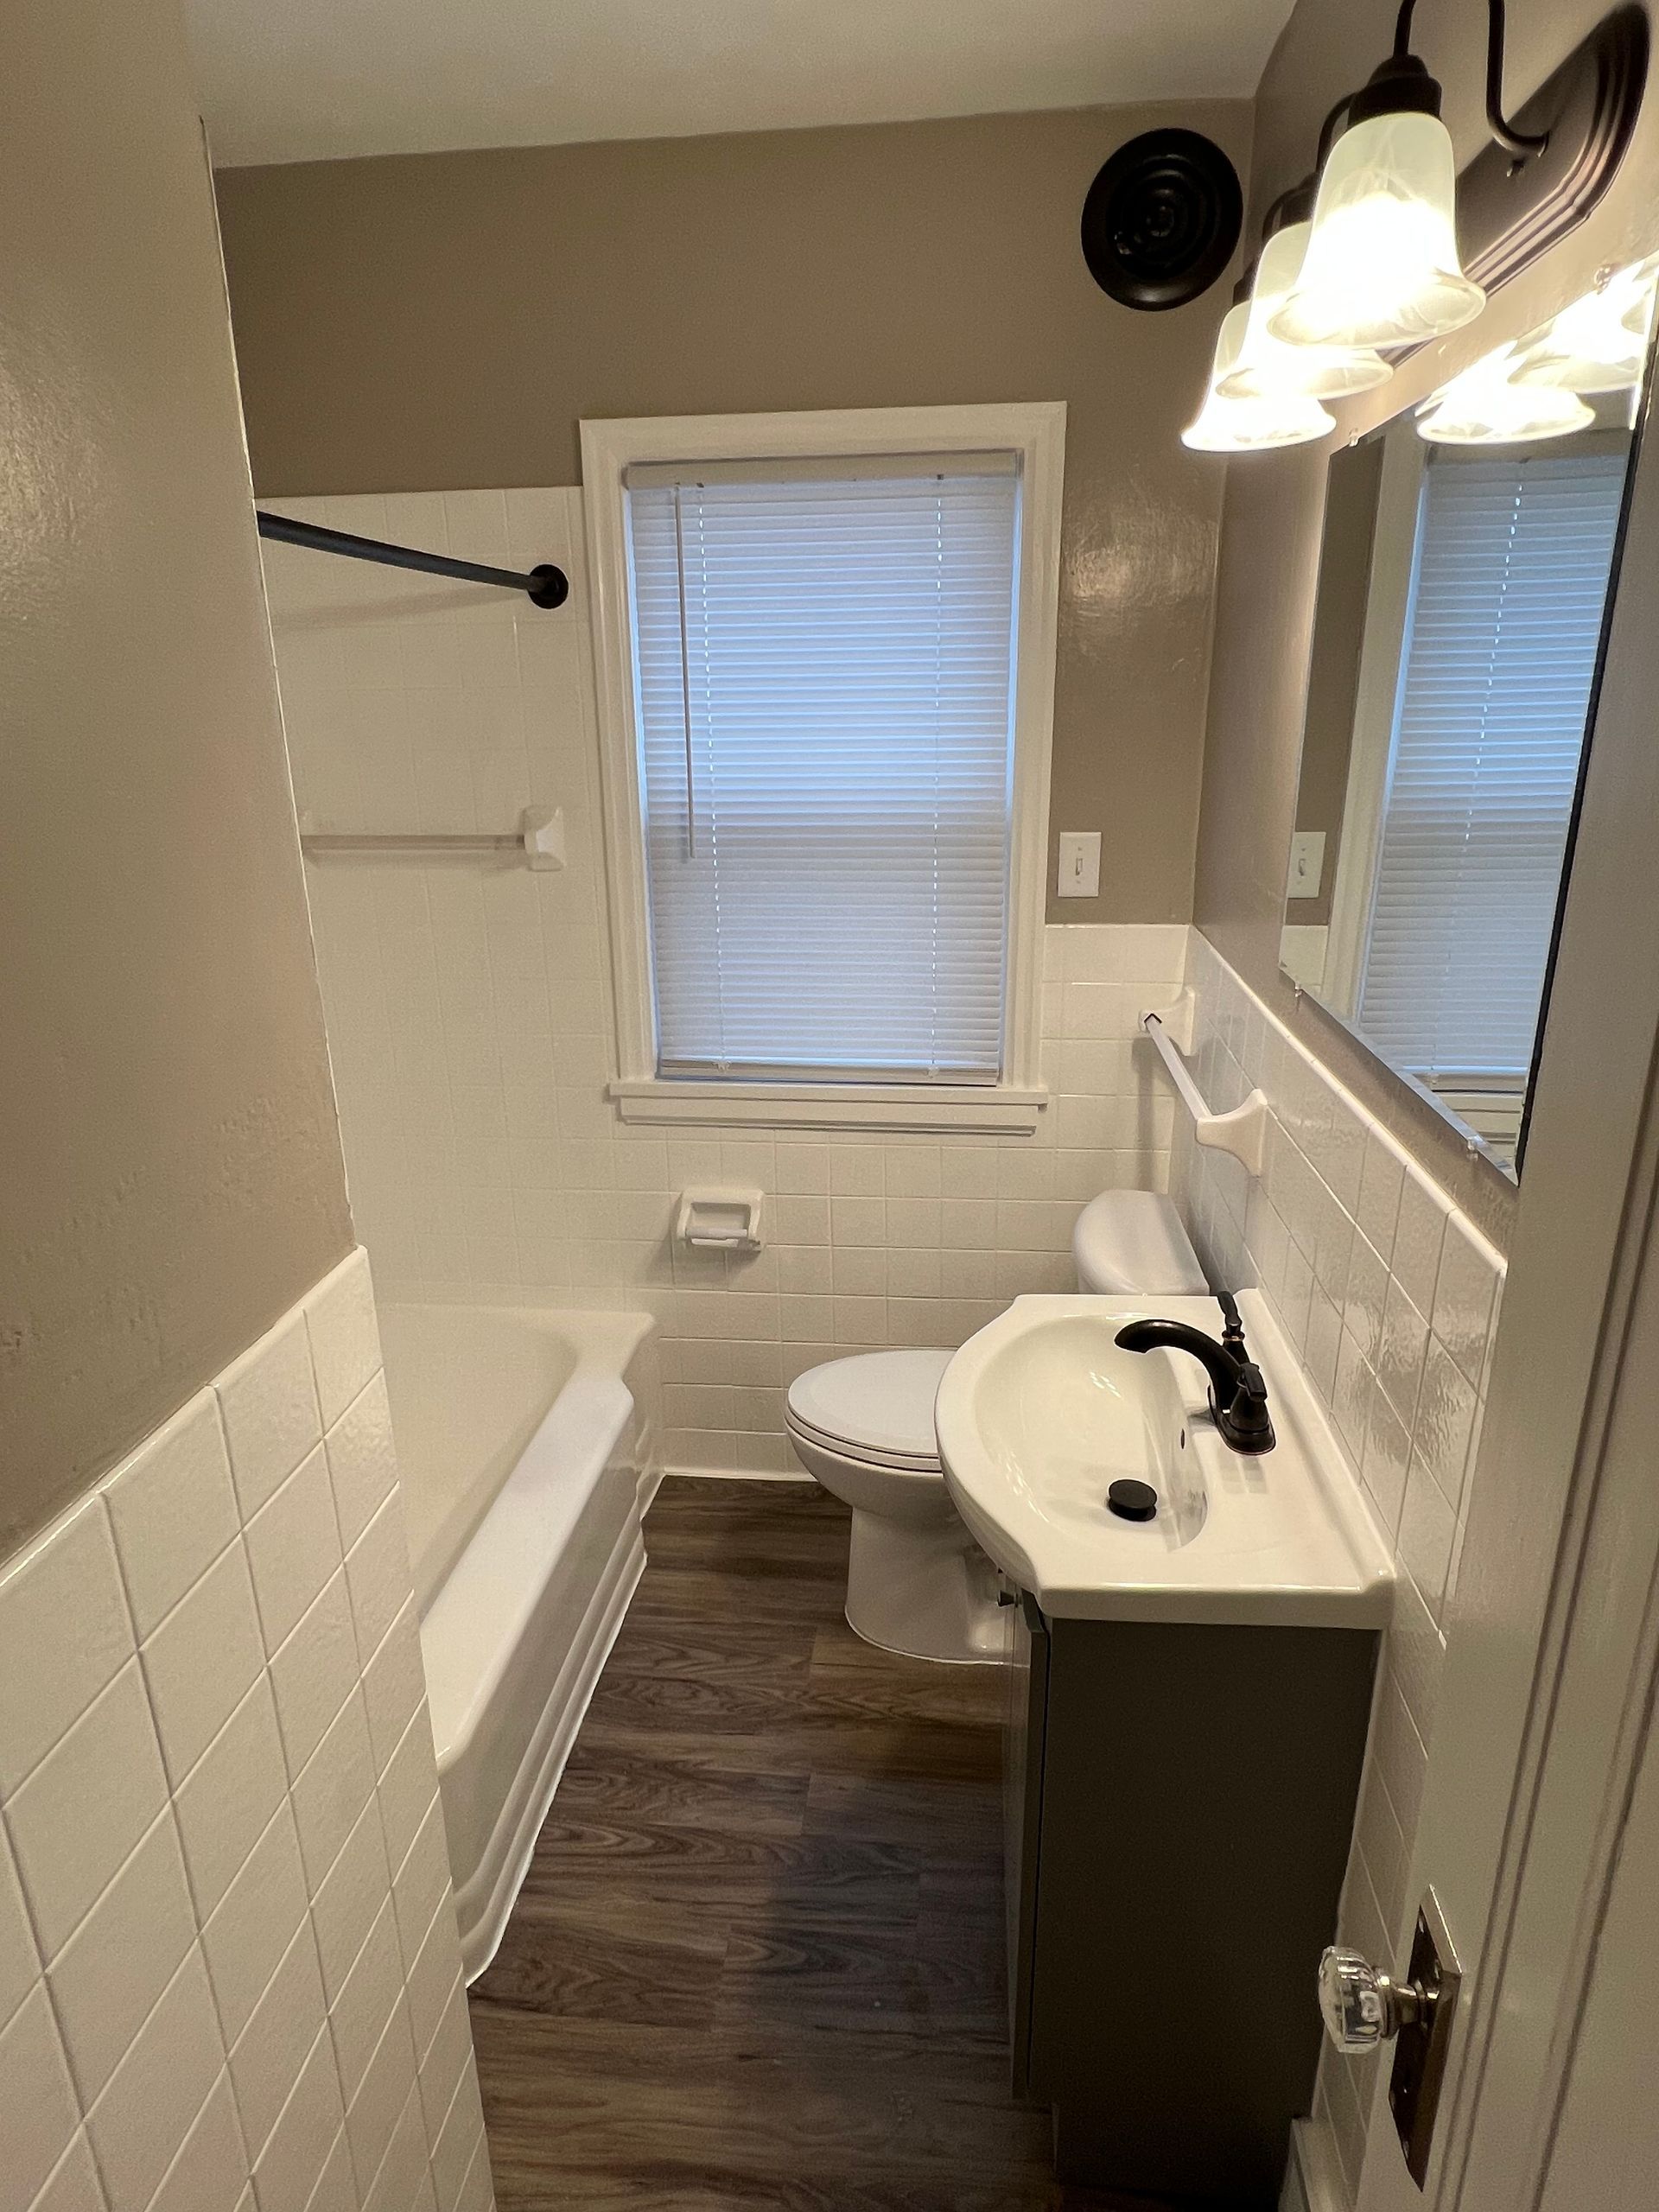 A bathroom with a sink , toilet , bathtub and mirror.